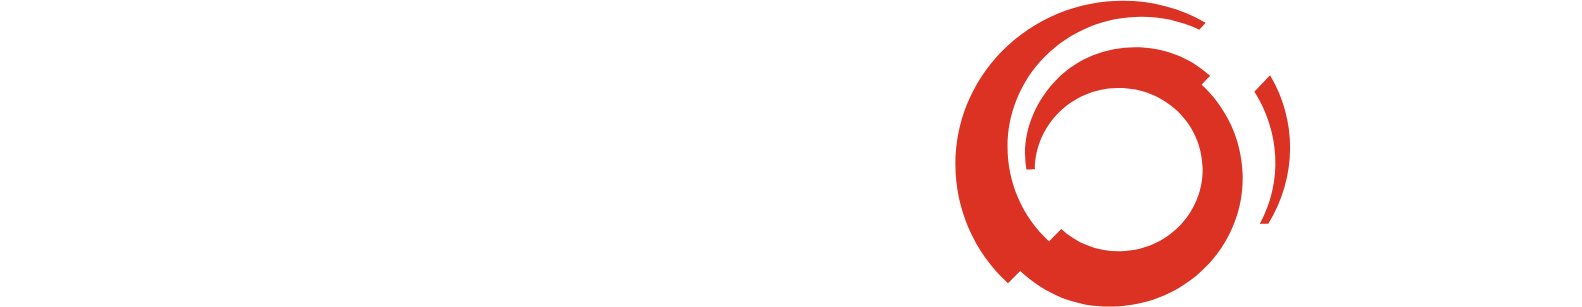 Alstom Logo groß für dunkle Hintergründe (transparentes PNG)